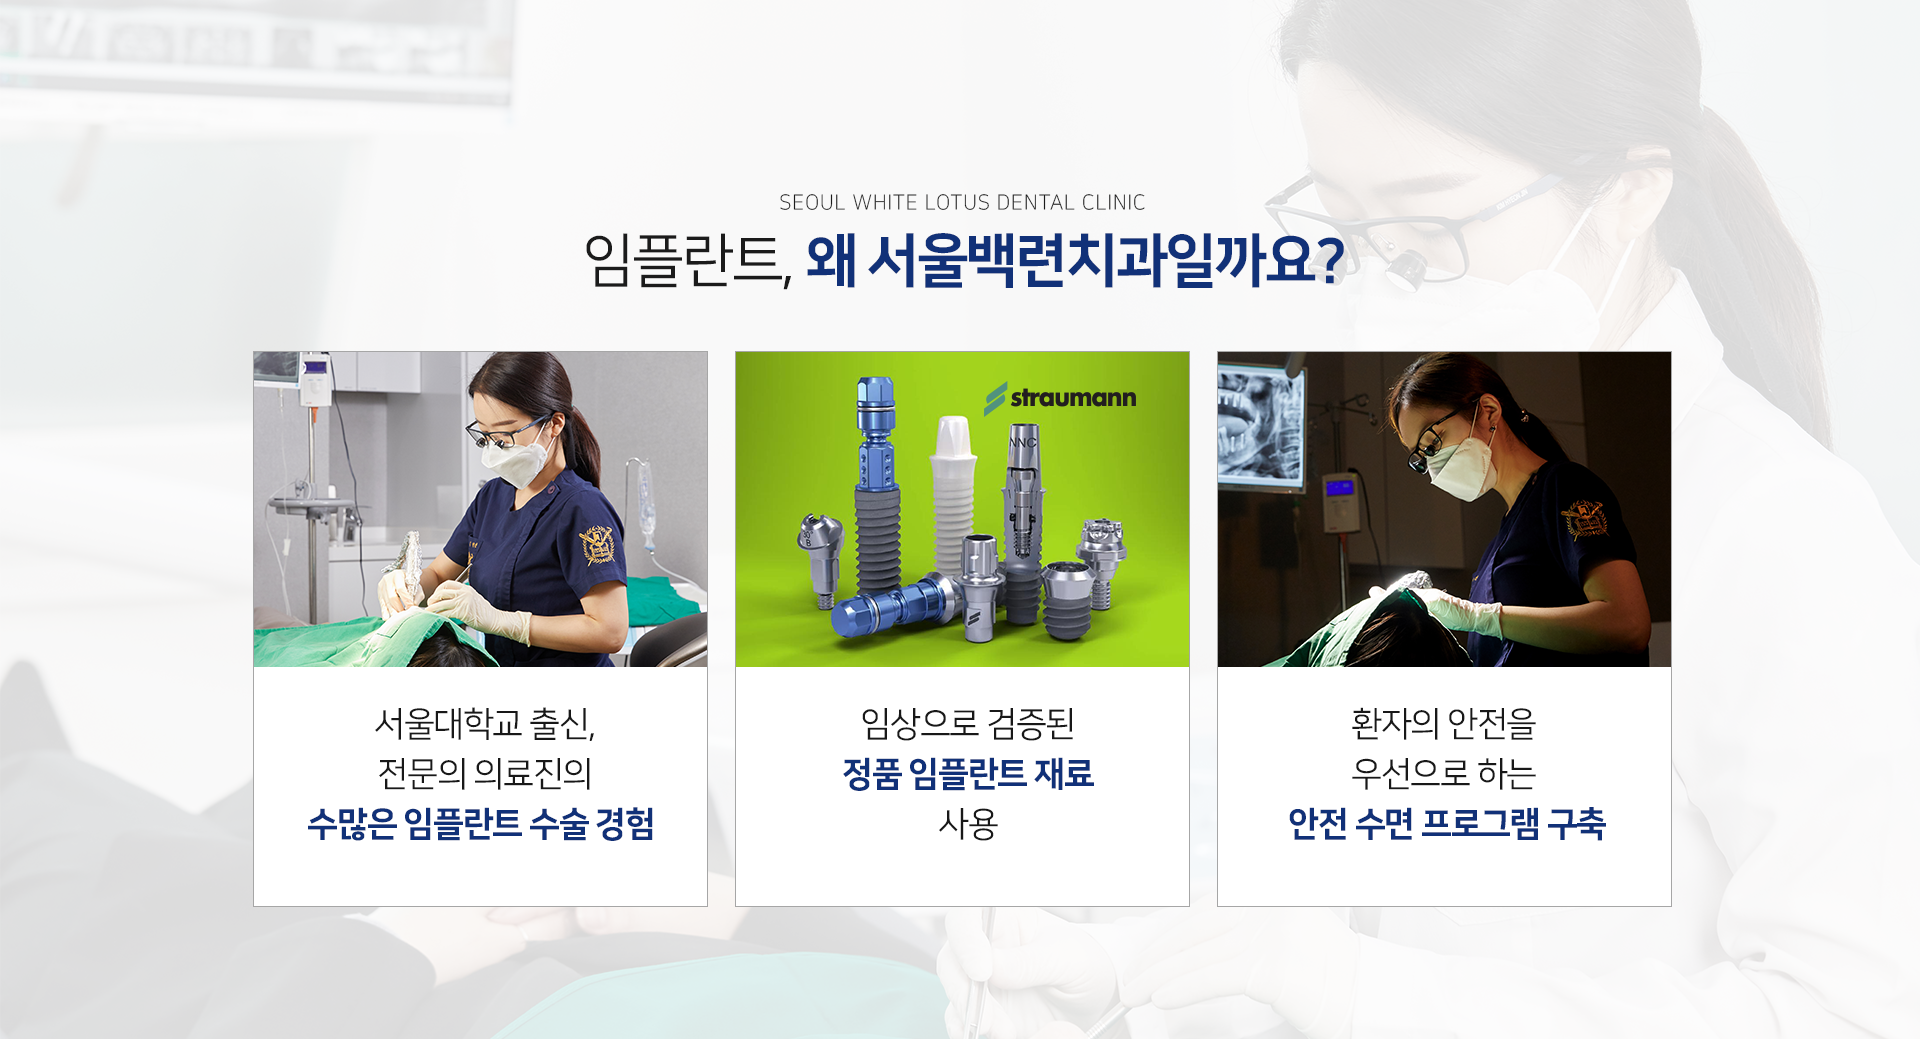 임플란트-왜-서울백련치과일까요-서울대학교-출신-전문의-의료진의-수많은-임플란트-수술-경험-임상으로-검증된-정품-임플란트-재료-사용-환자의-안전을-우선으로-하는-안전-수면-프로그램-구축